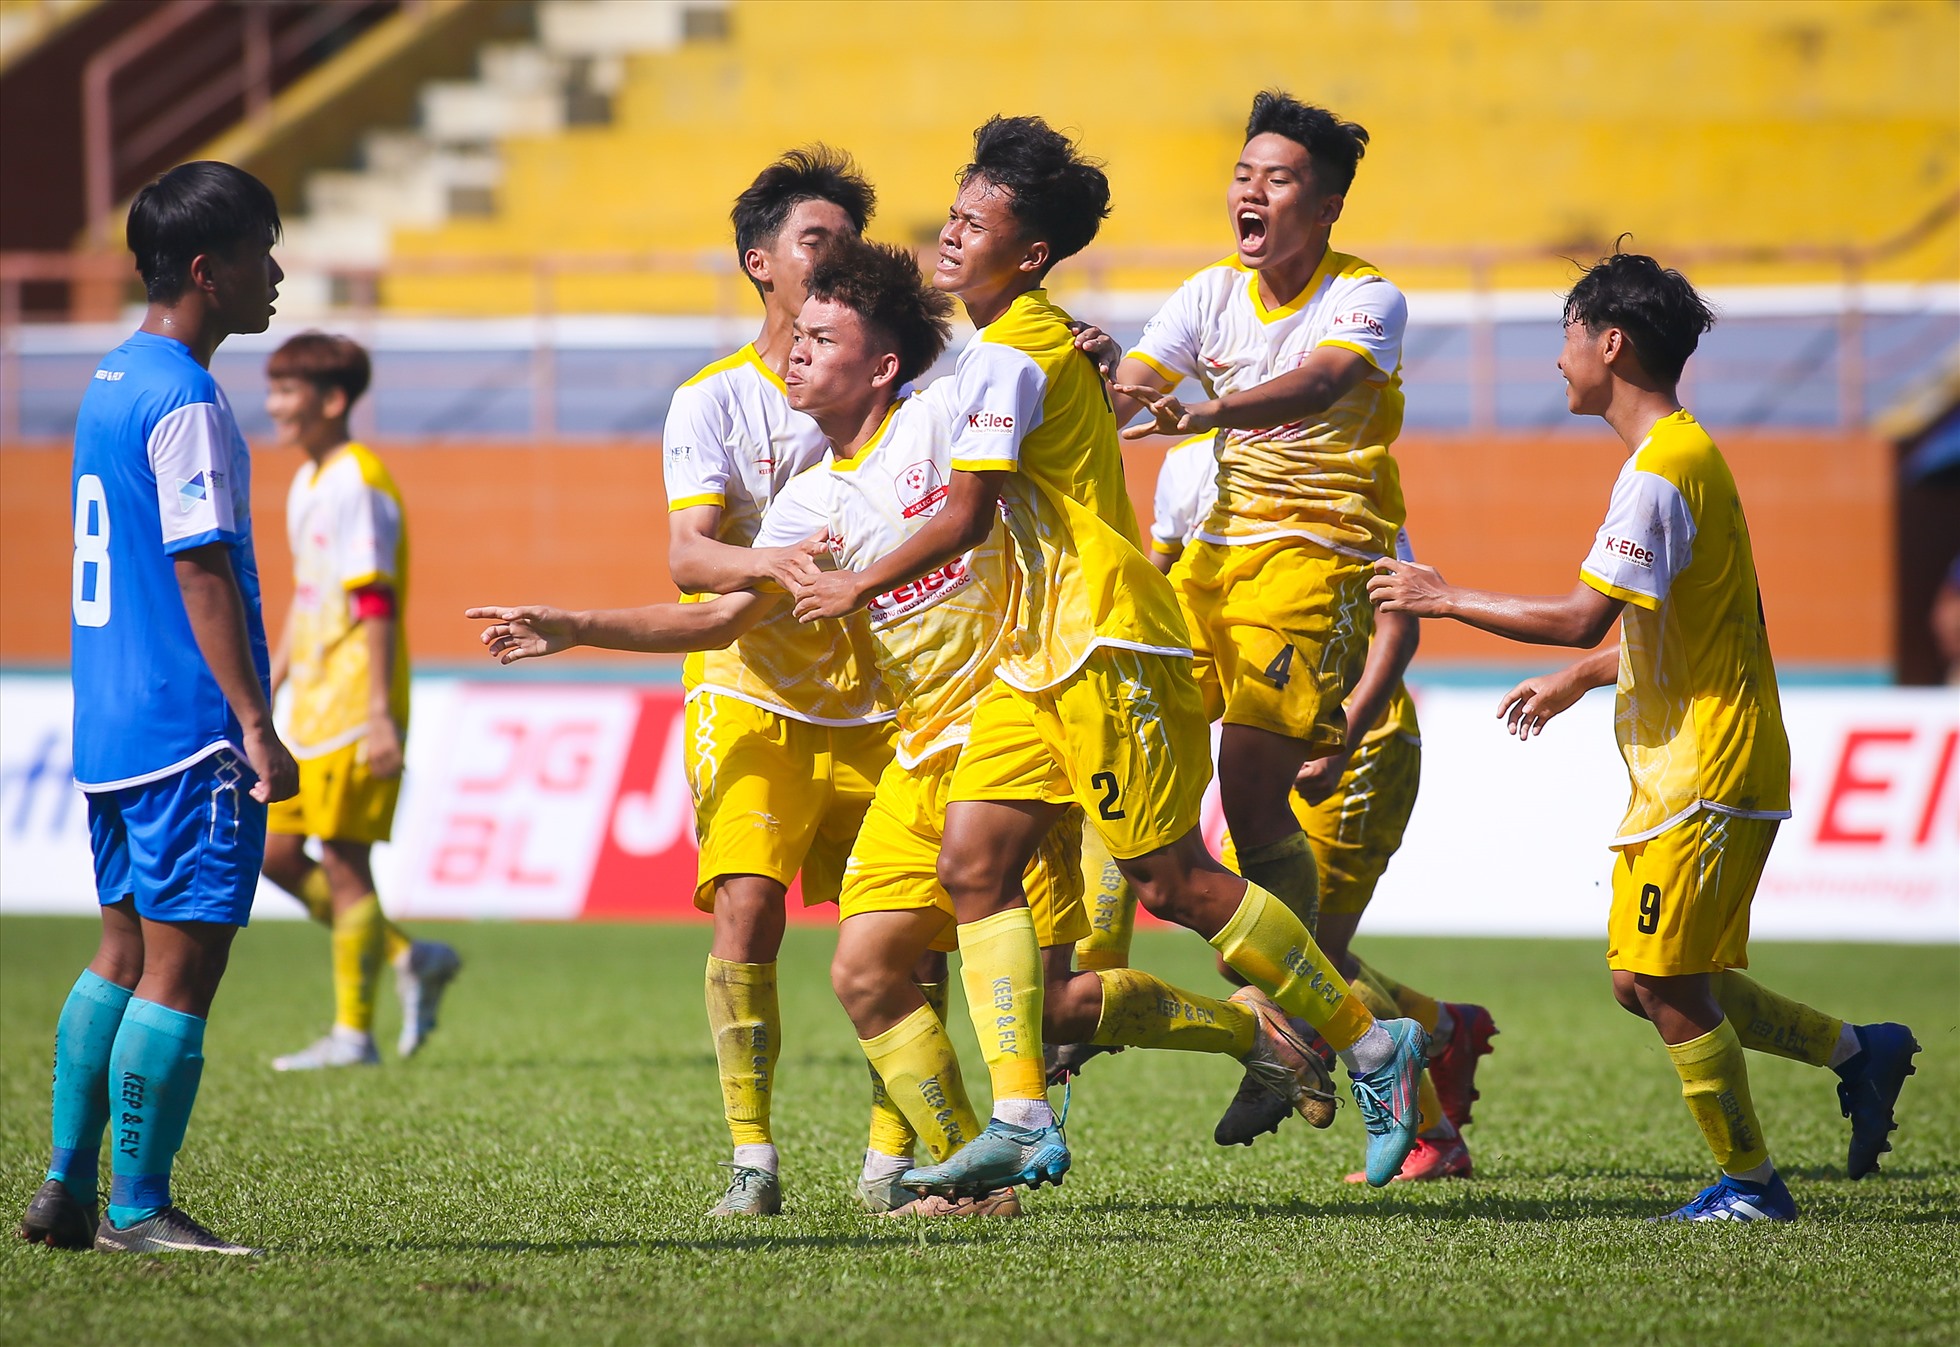 Tuy nhiên, với quyết tâm và nỗ lực đến cùng, U17 Bình Phước khiến các khán giả trên sân bất ngờ với 2 bàn thắng liên tiếp để quân bình tỉ số 3-3.